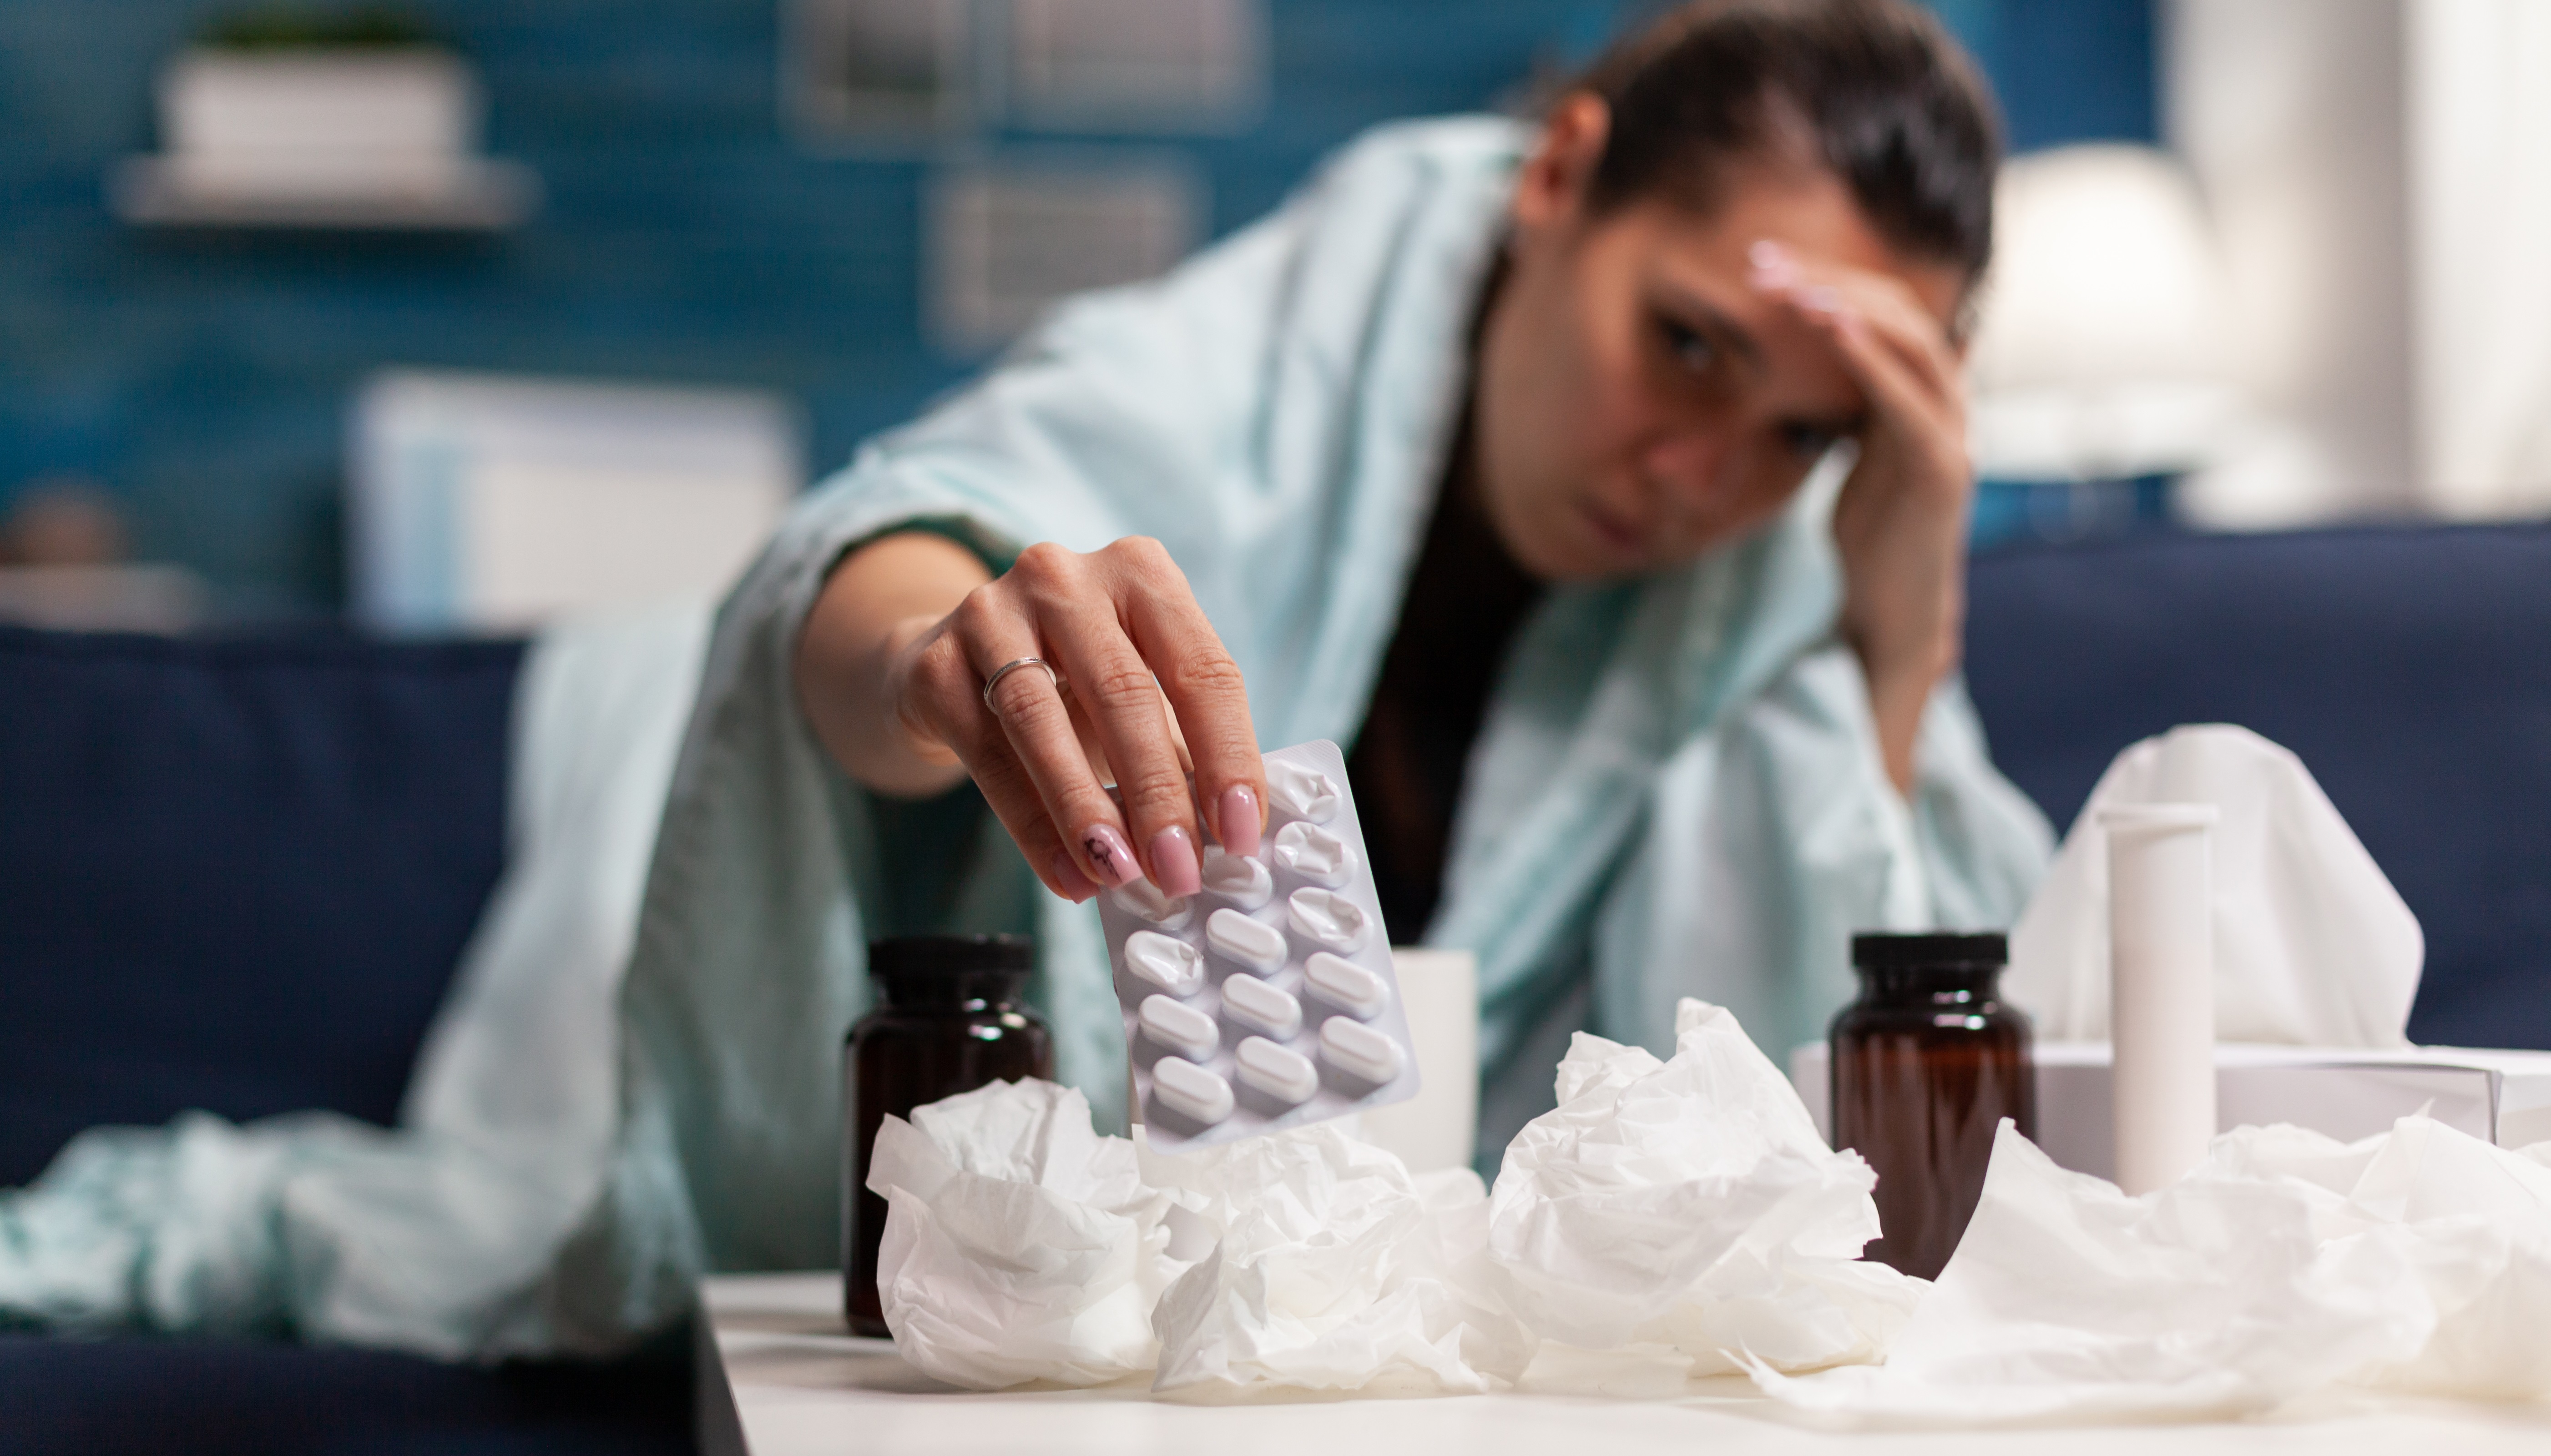 7 случаев гриппа зафиксировано в Марий Эл за неделю